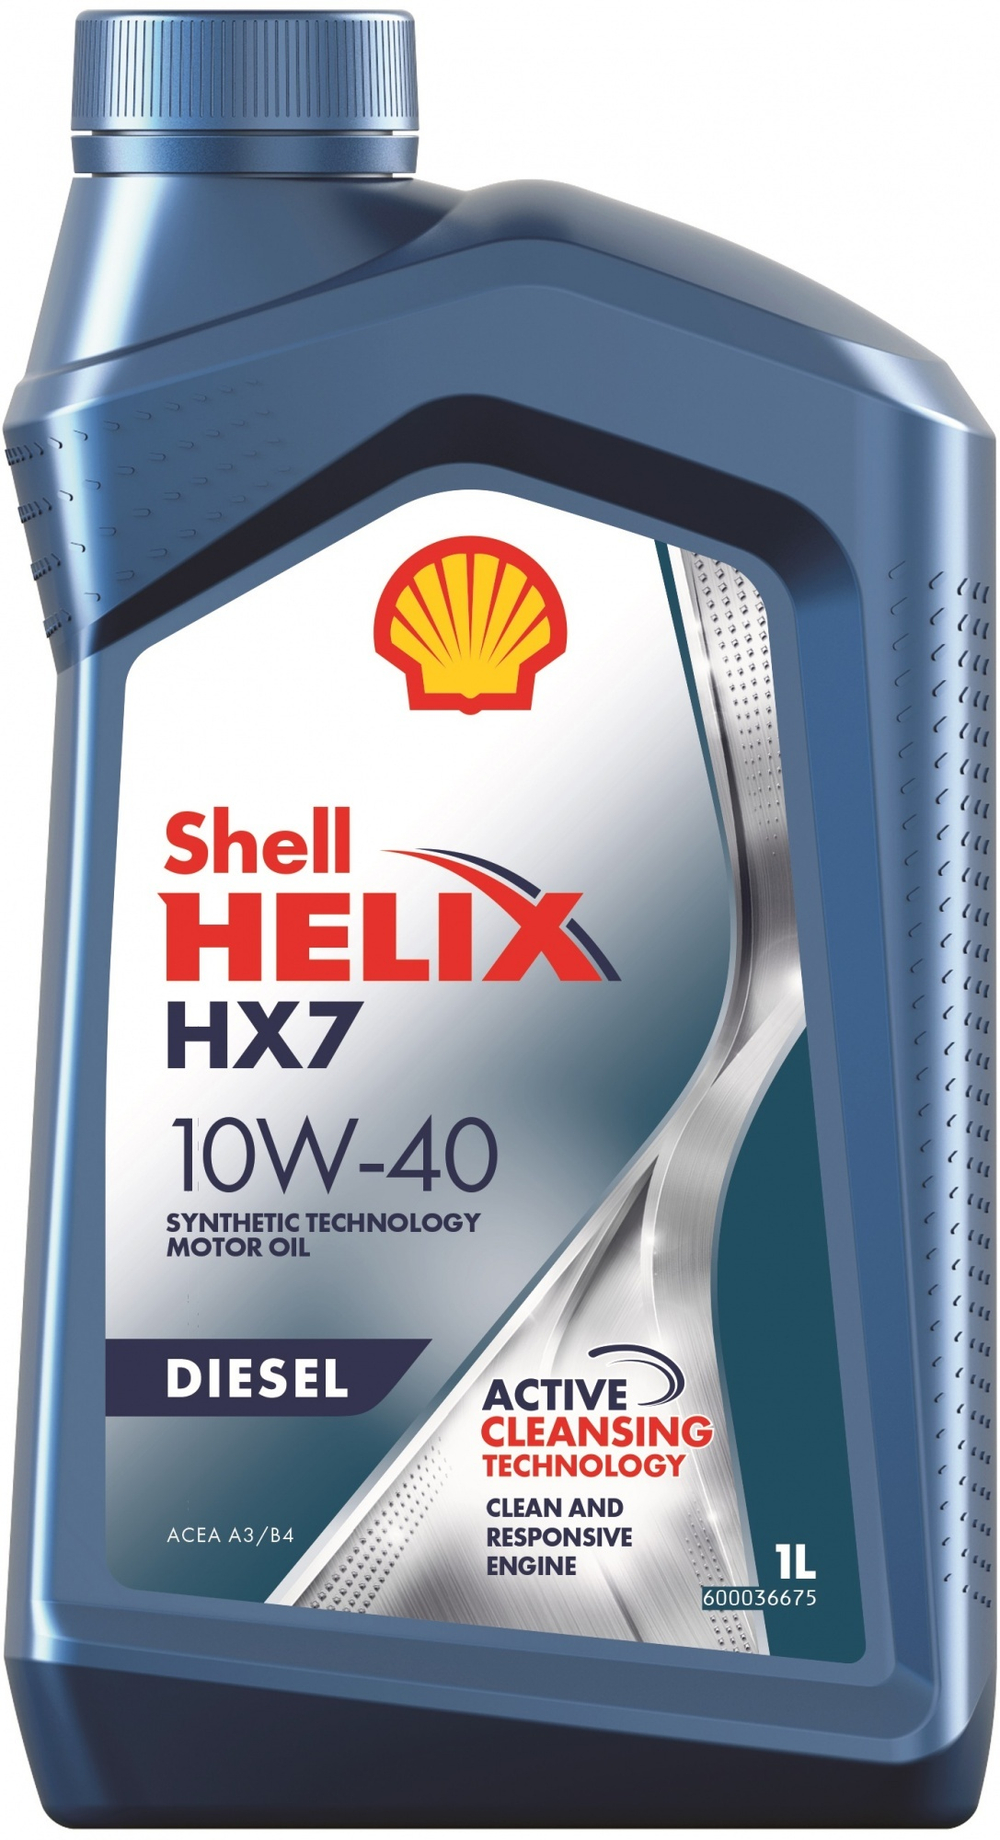 Shell Helix HX7 Diesel 10W-40 209 л